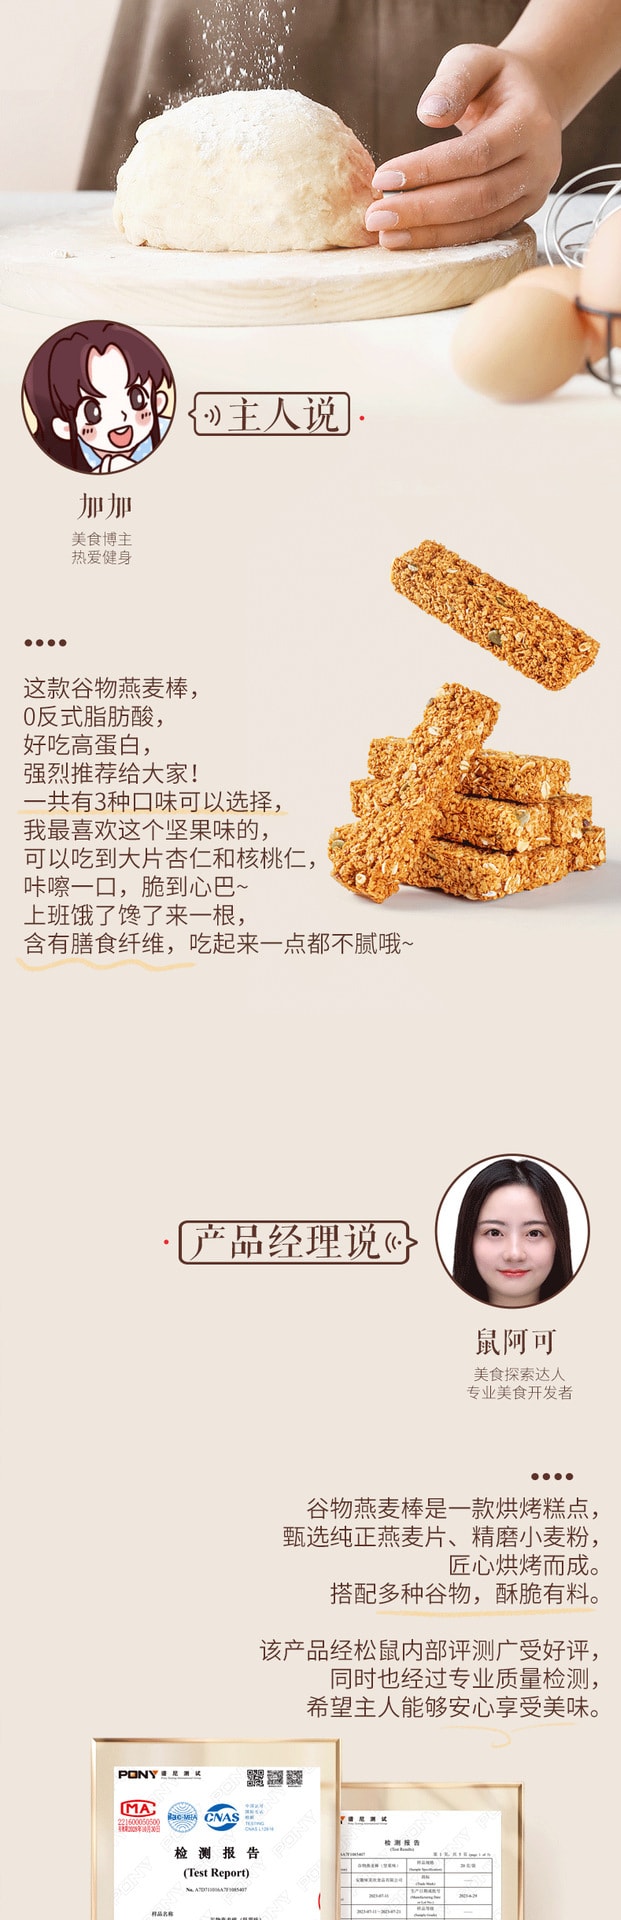 【中國直郵】三隻松鼠 燕麥穀物棒堅果味燕麥粗糧代餐頂飽穀物200g/盒